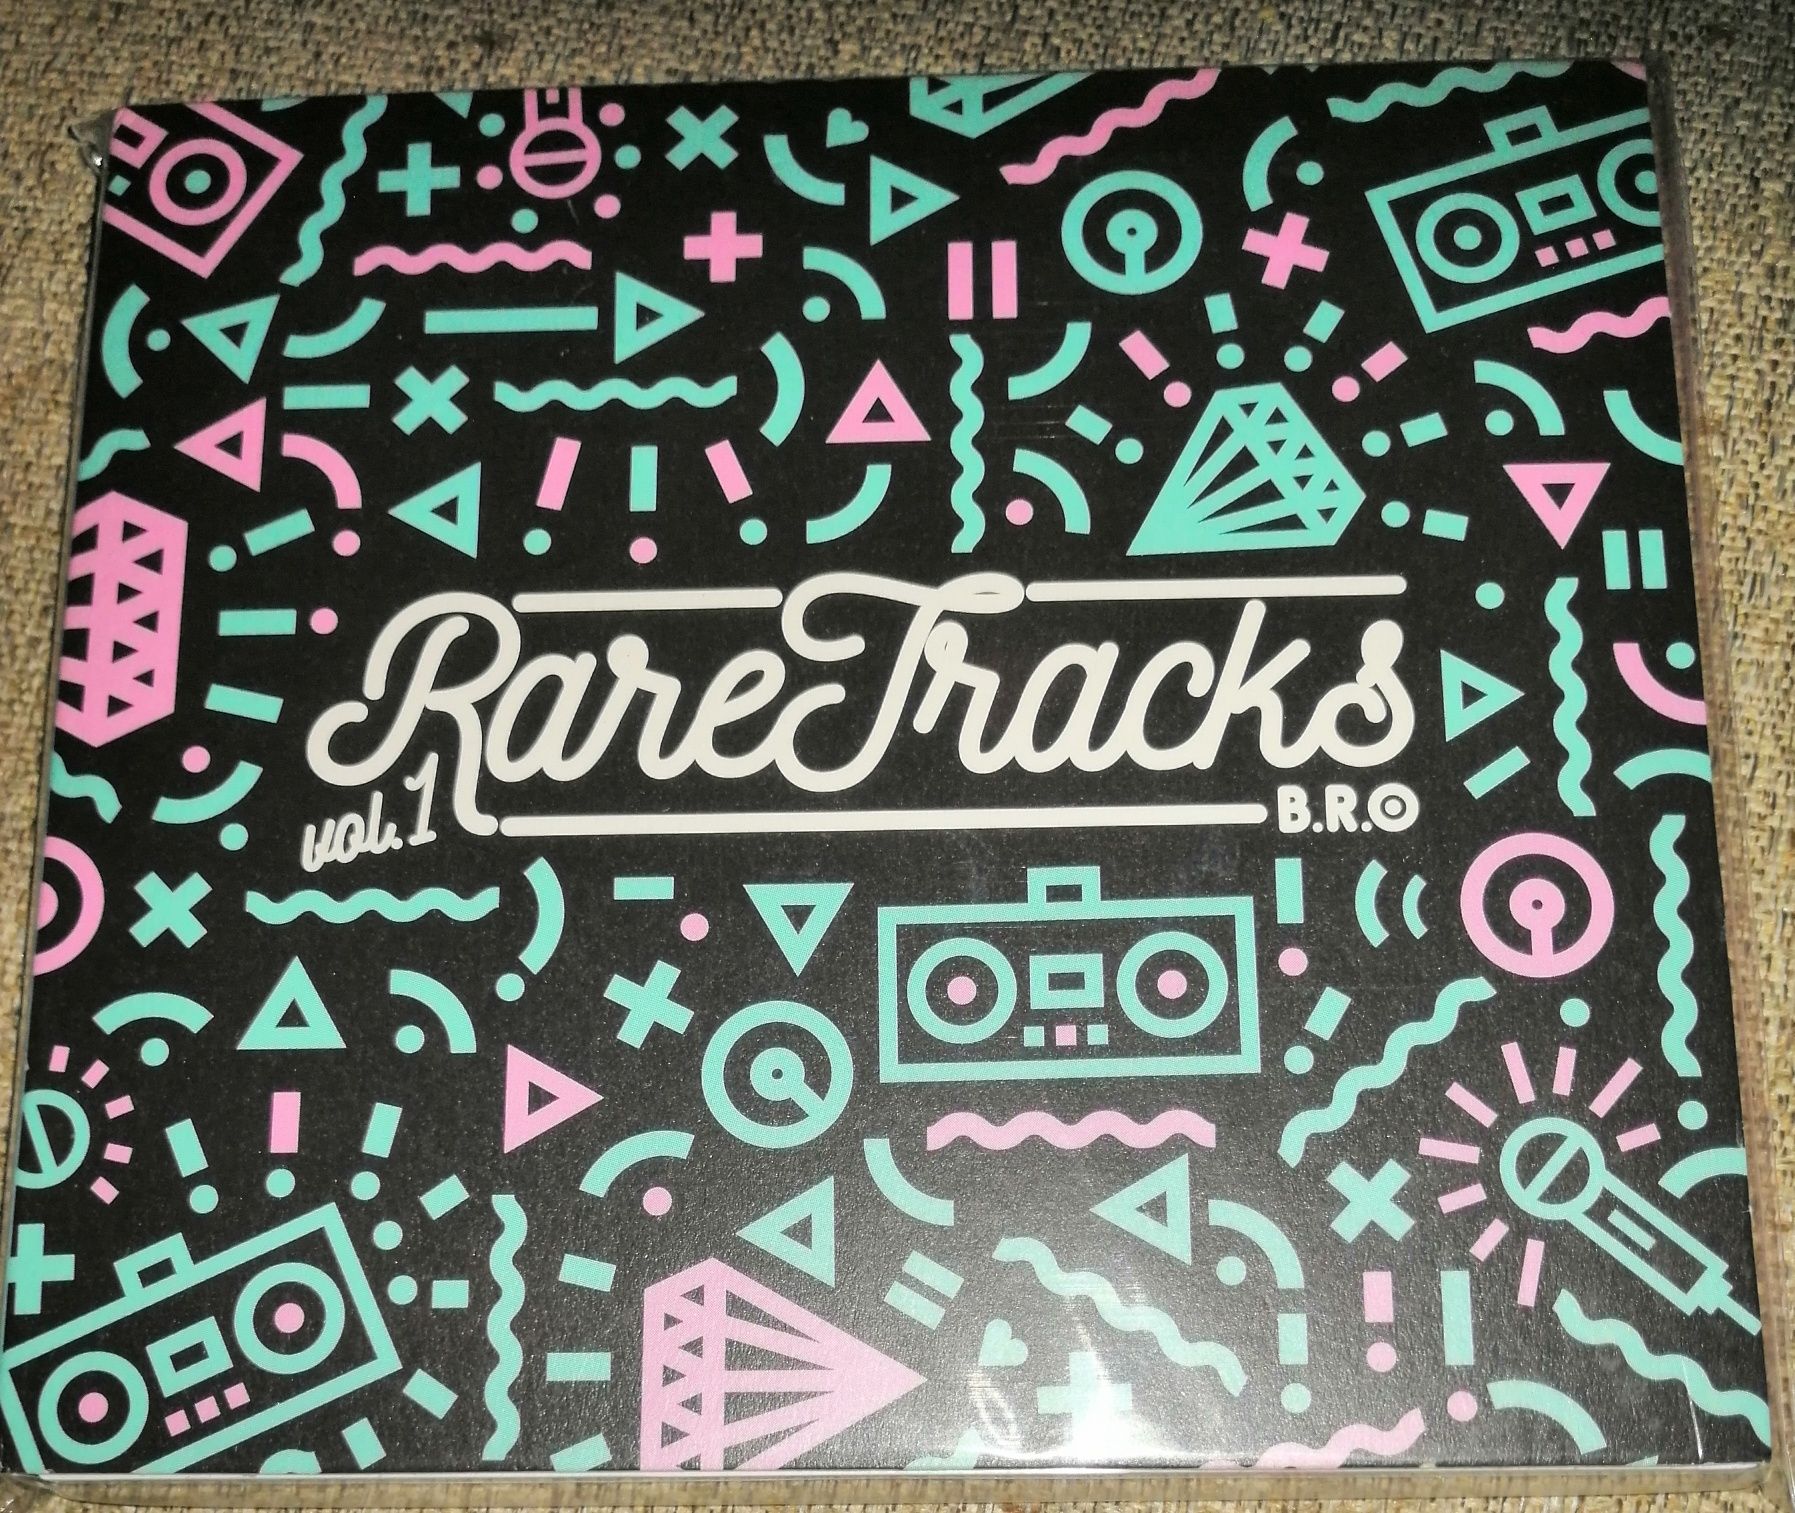 B.R.O RareTrack vol. 1 mixtape CD UNIKAT 1wyd nowa folia zastępcza